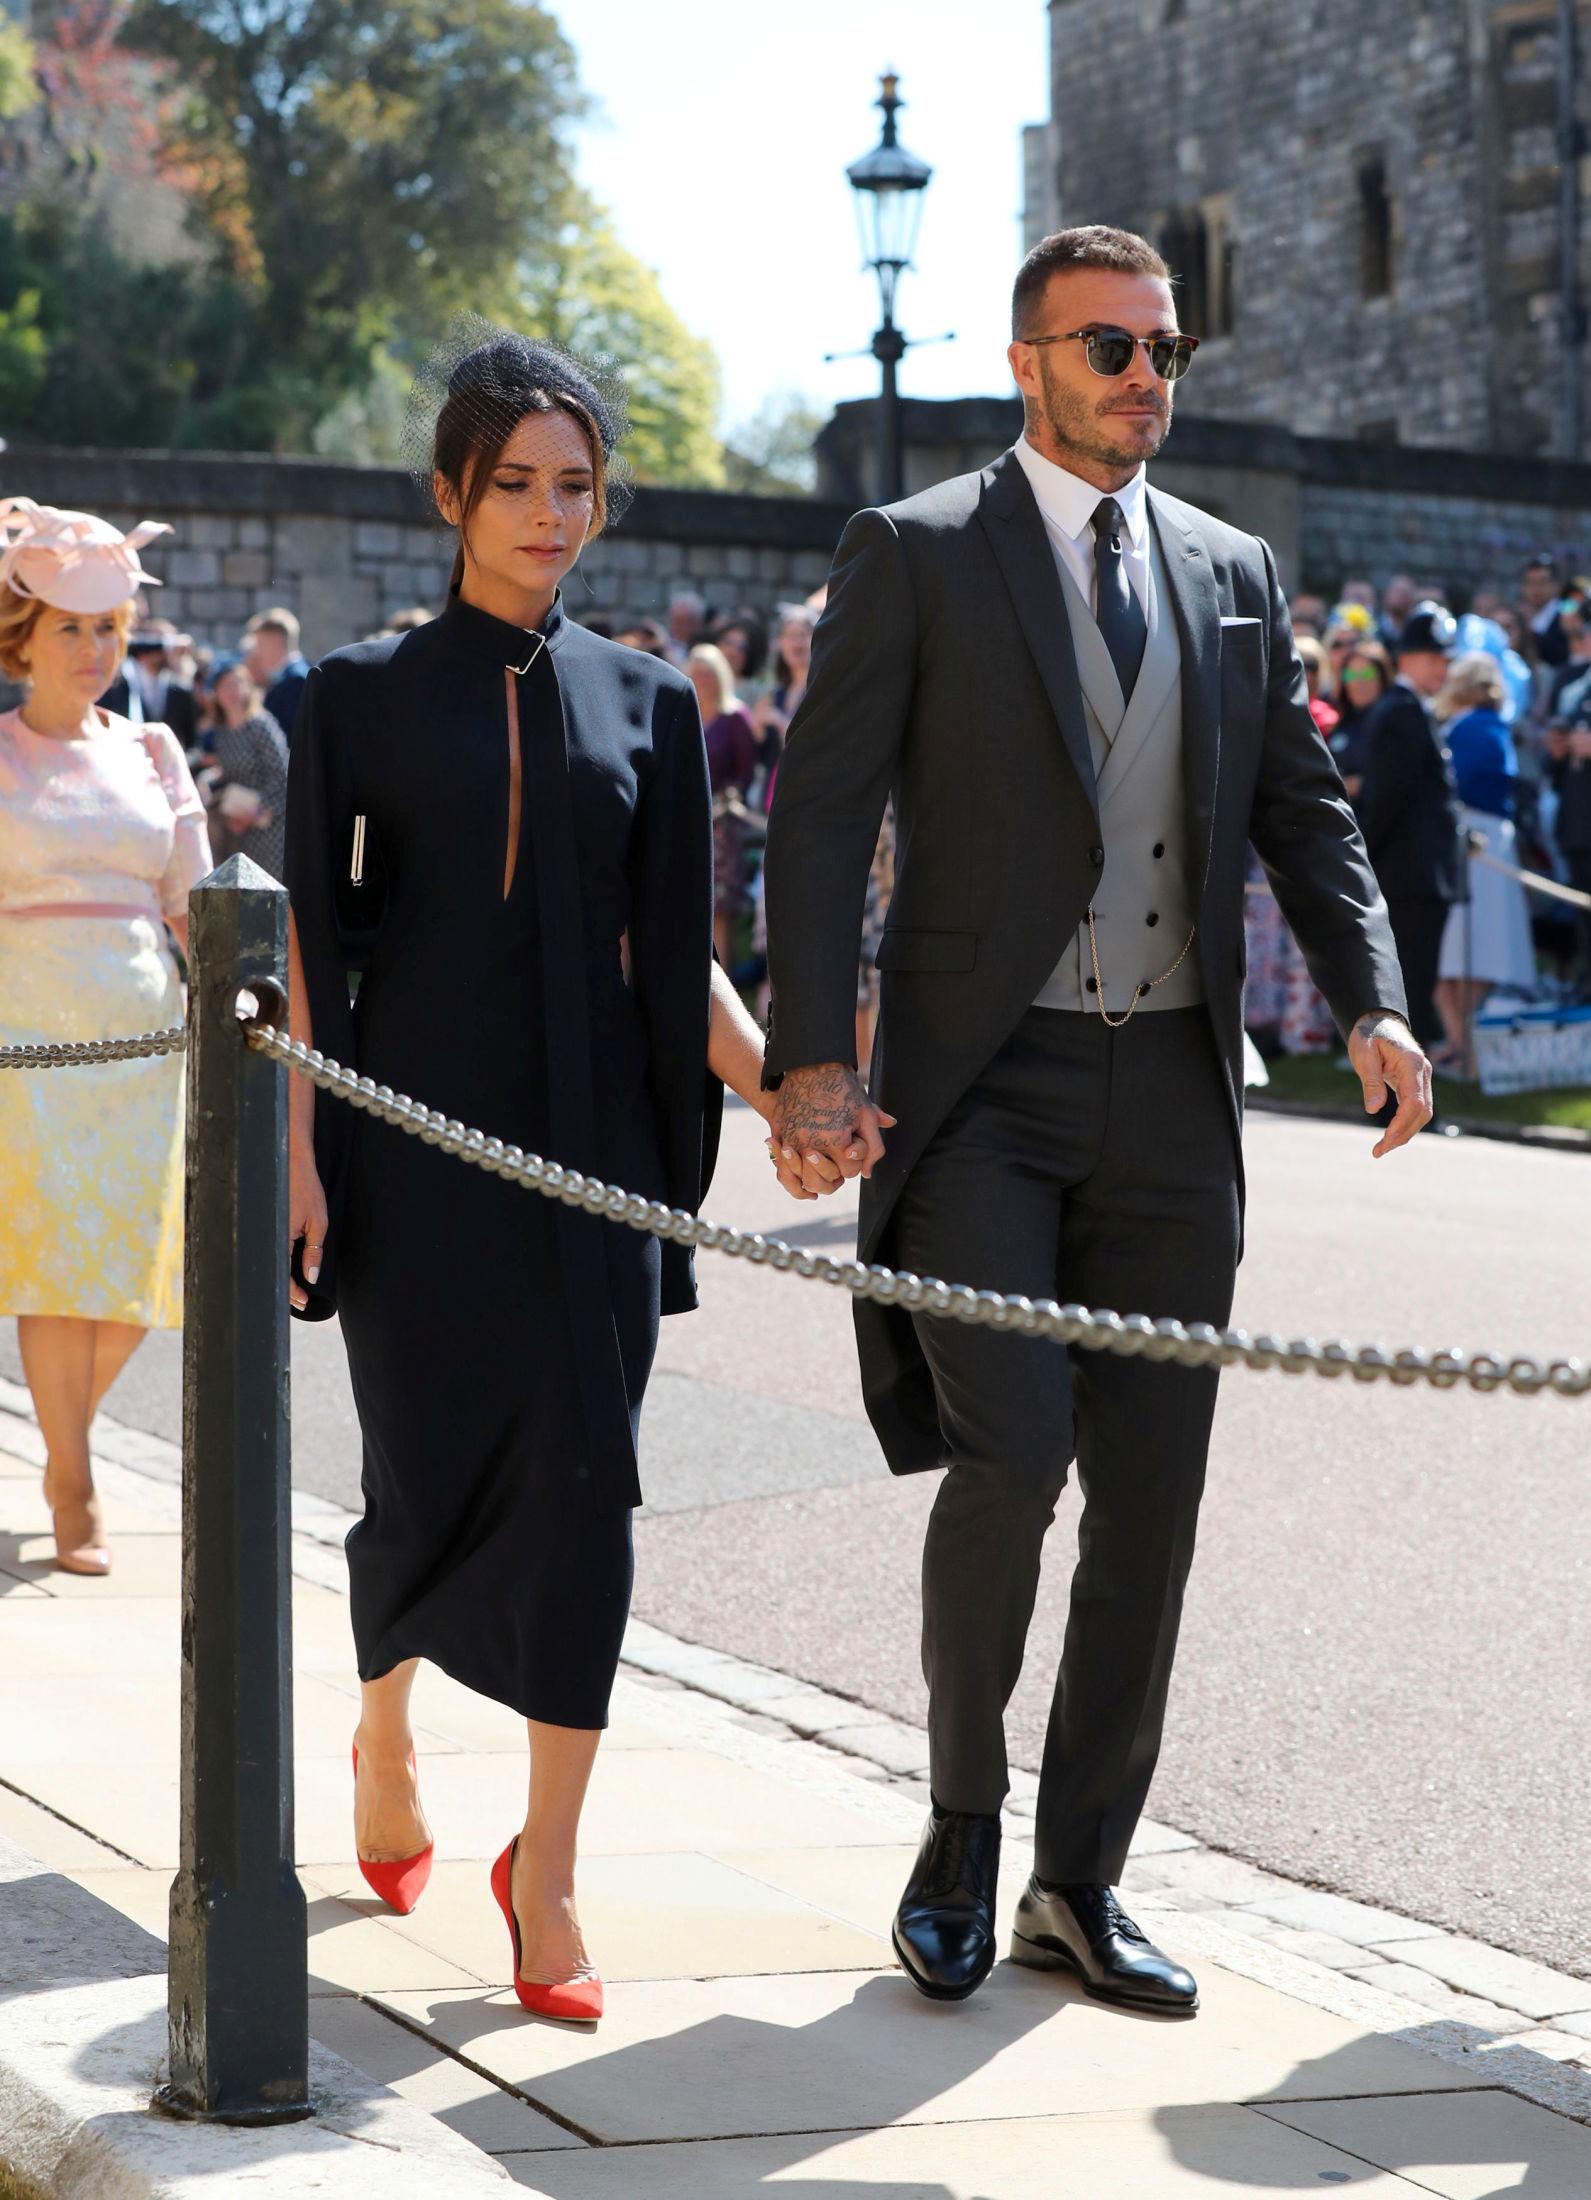 HÅND I HÅND: Ekteparet Victoria og David Beckham kom sammen i bryllupet. Victoria Beckham har selv gått ut og avkreftet at hun skulle designe brudekjolen. For anledningen hadde hun mørk kjole med røde sko. David stilte i grå sjakett. Foto: Gareth Fuller/Reuters.